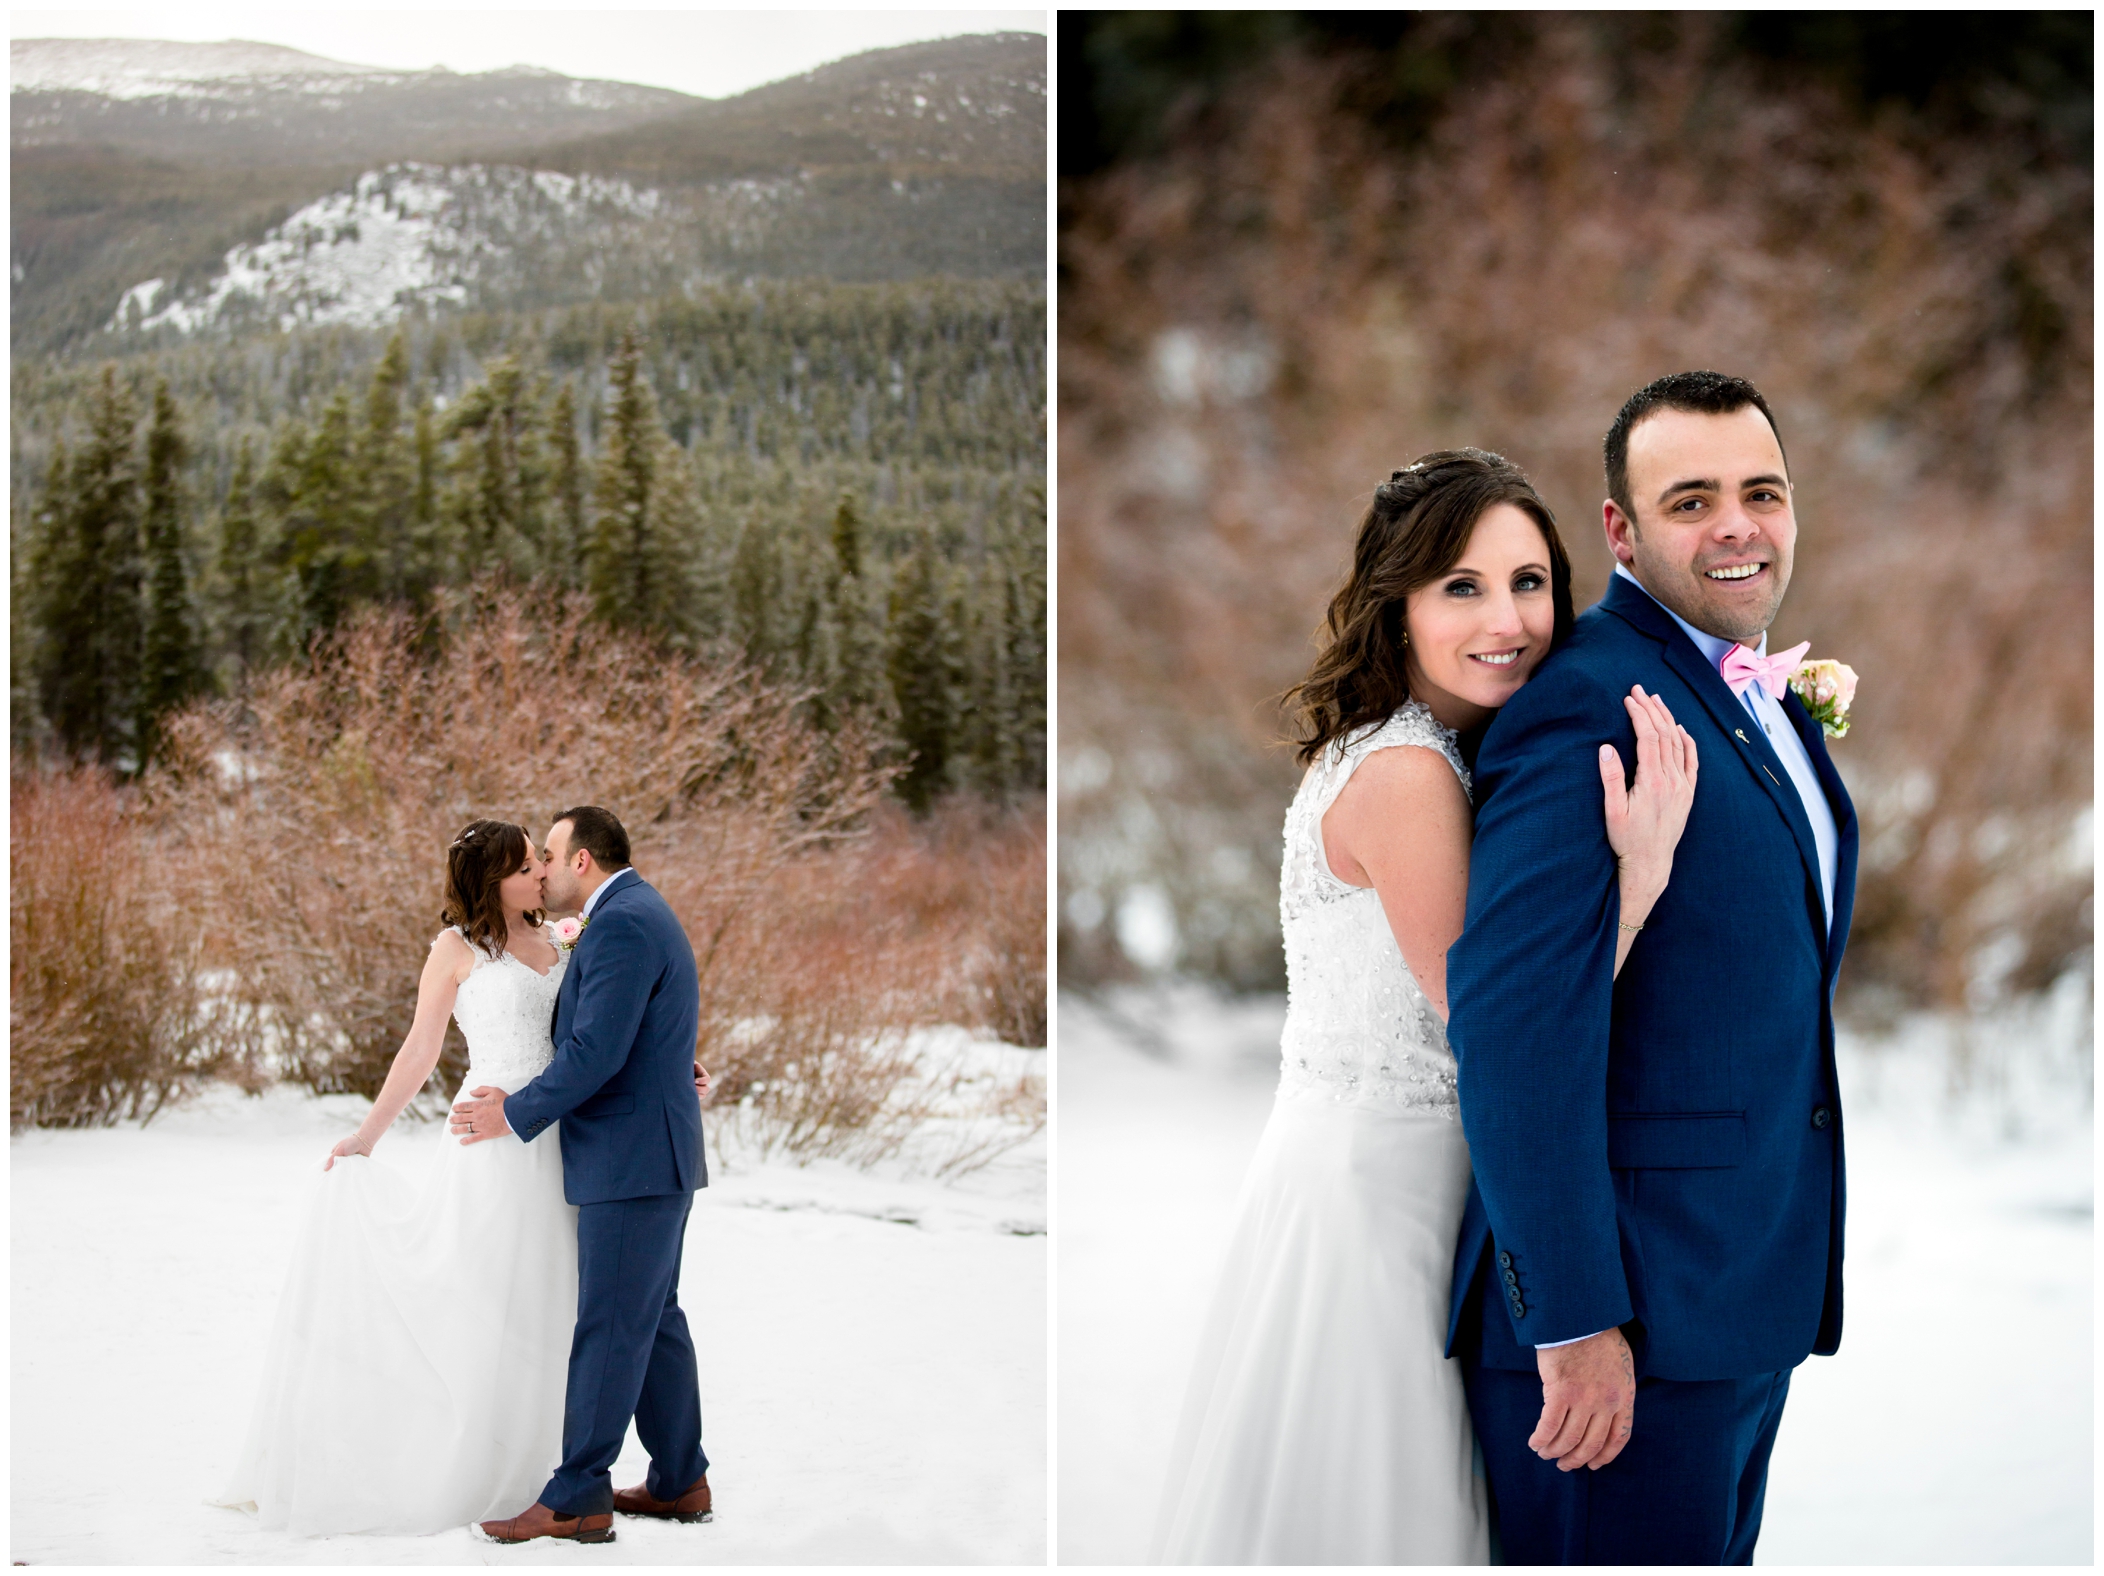 snowy winter bride and groom wedding photos at Sprague Lake in Estes Park Colorado 